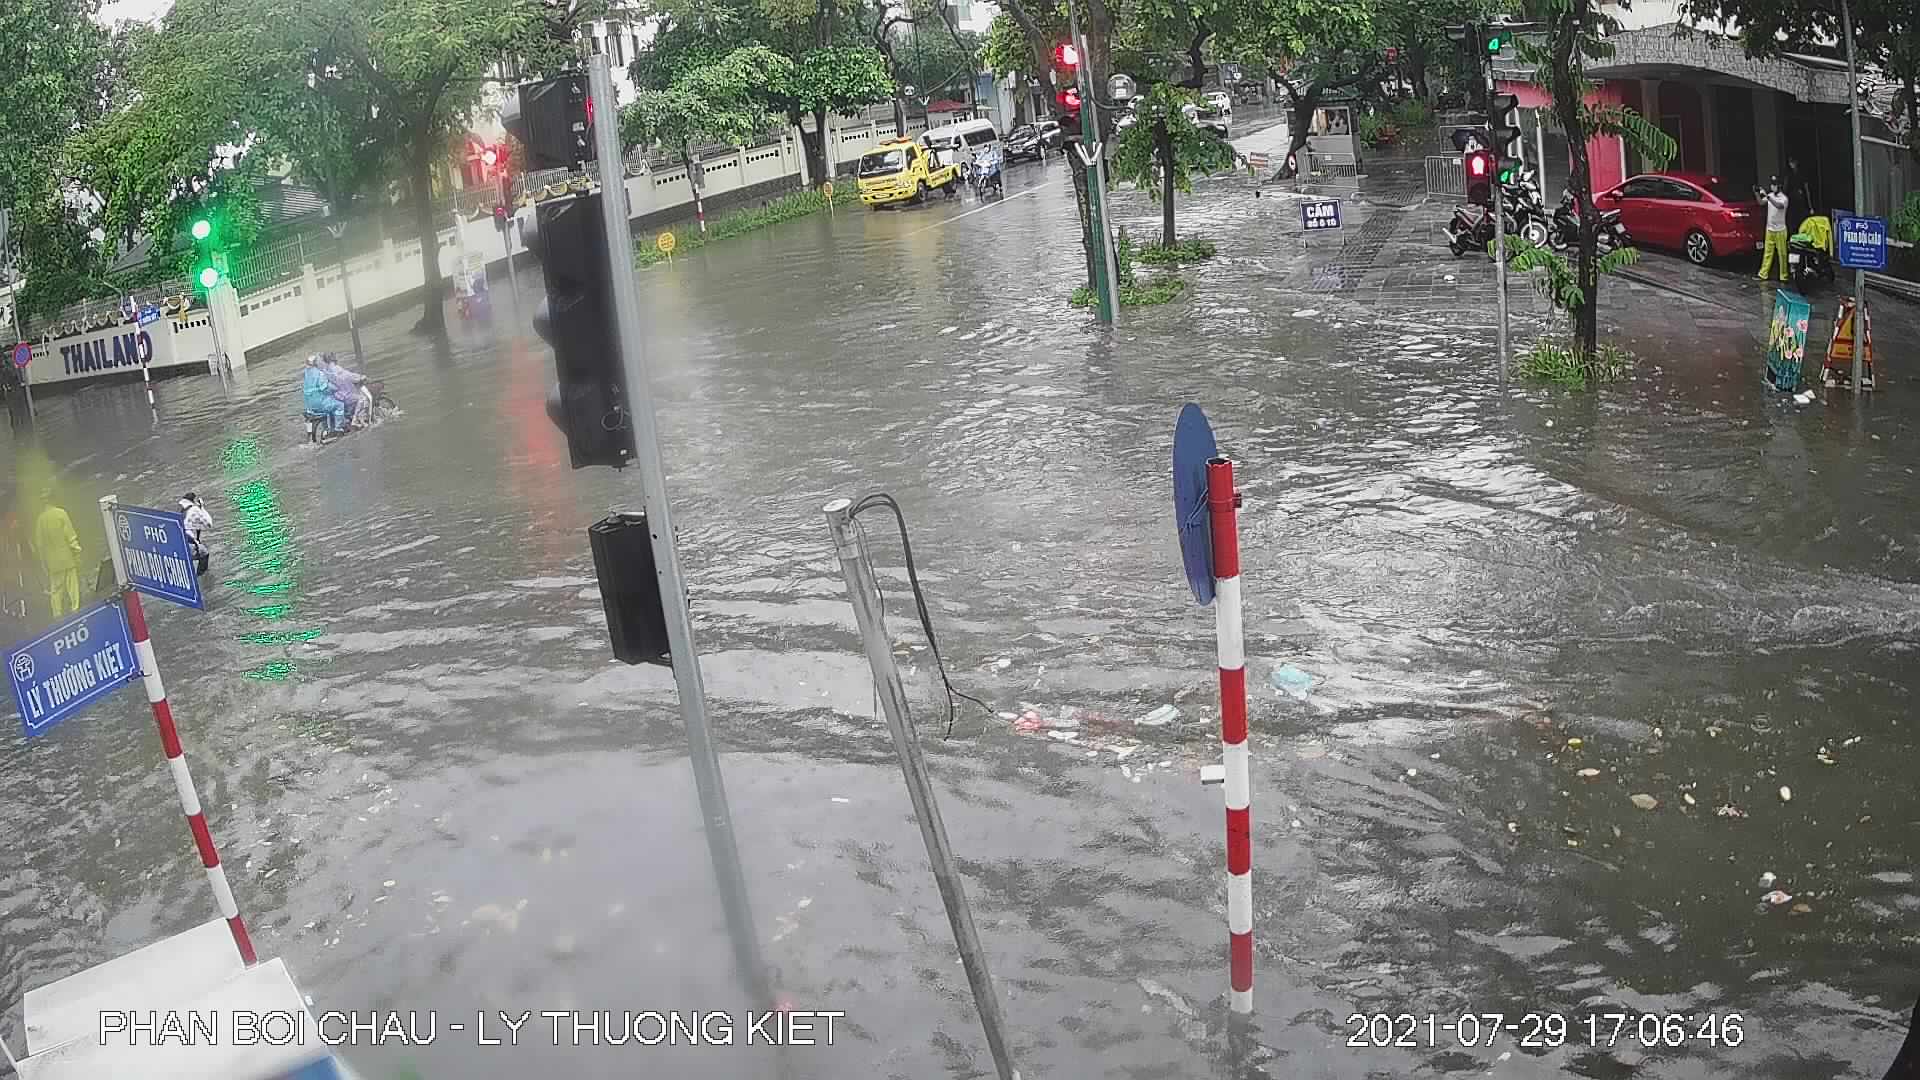 &nbsp;Ngã tư Phan Bội Châu – Lý Thường Kiệt (quận Hoàn Kiếm) ngập sâu trong cơn mưa chiều 29/7. Ảnh: Thoatnuochanoi.